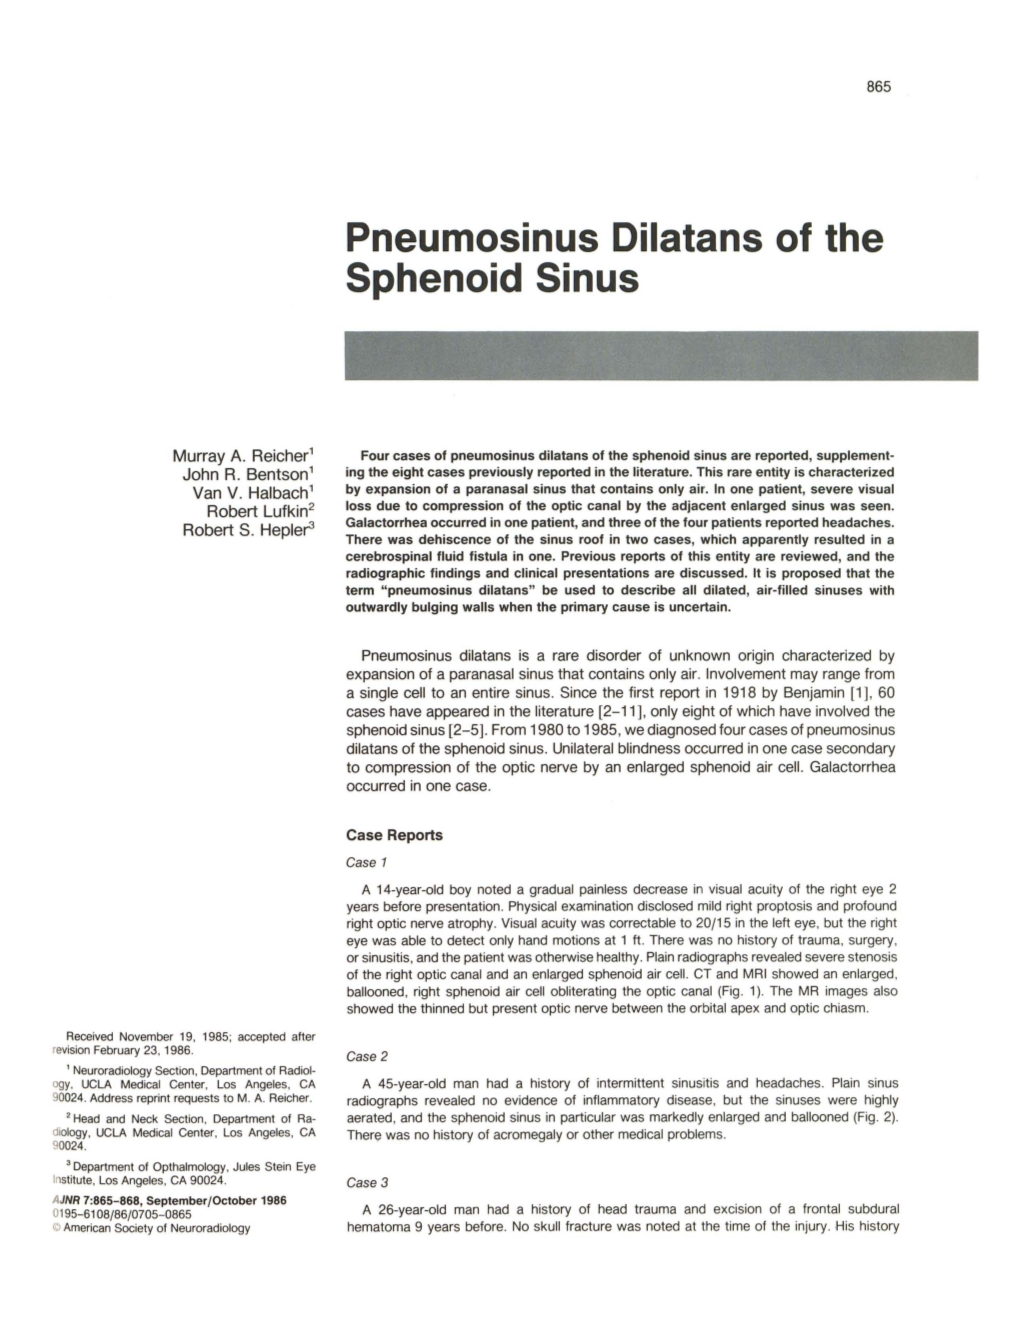 Pneumosinus Dilatans of the Sphenoid Sinus